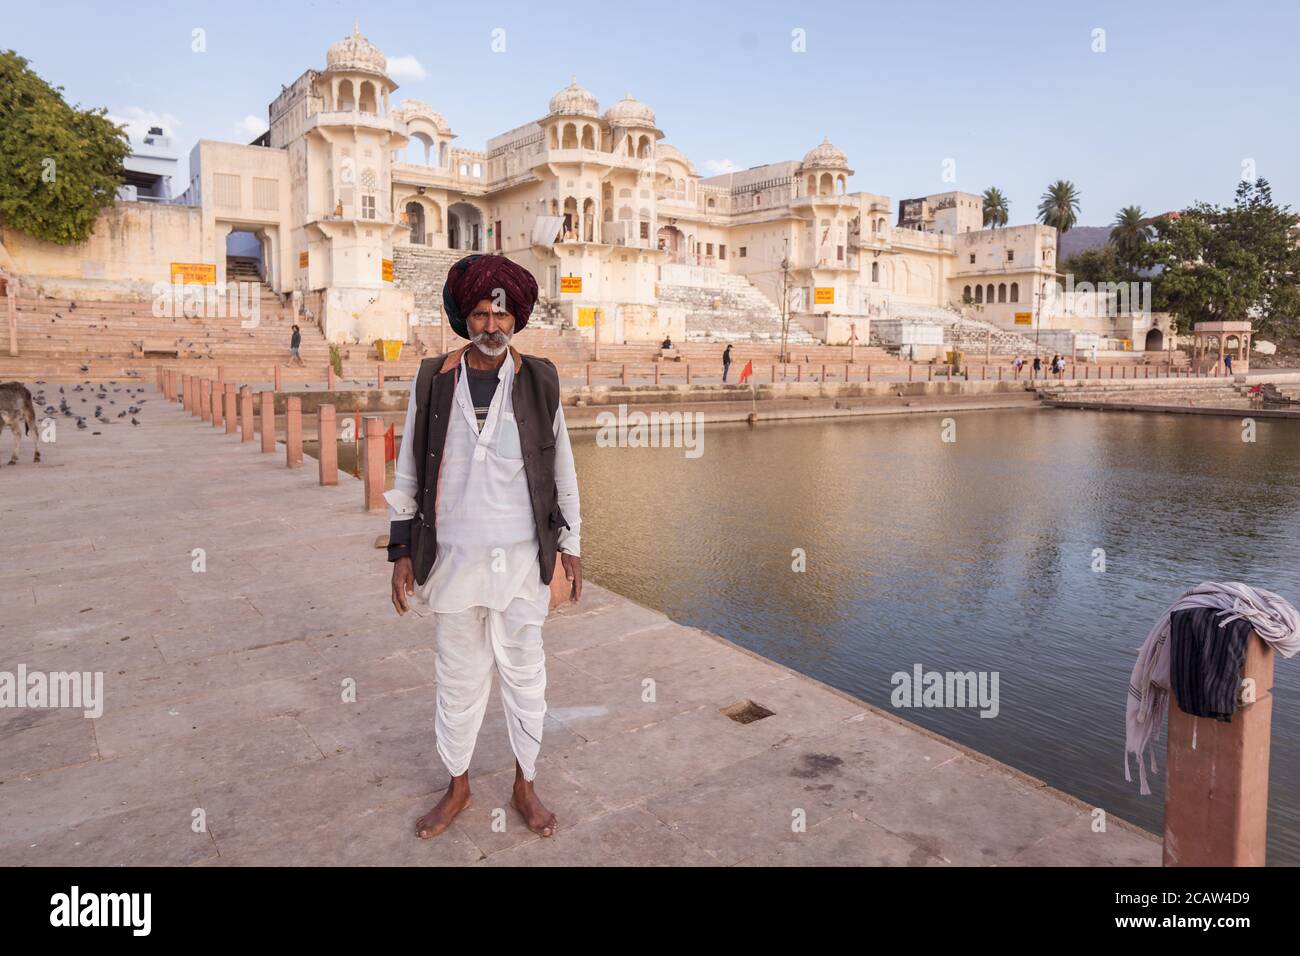 Pushkar / Indien - 6. März 2020: Porträt des Mannes mit grauen Schnurrbart und typischen Rajasthani Turban in der Umgebung des heiligen See von Pushkar Stockfoto